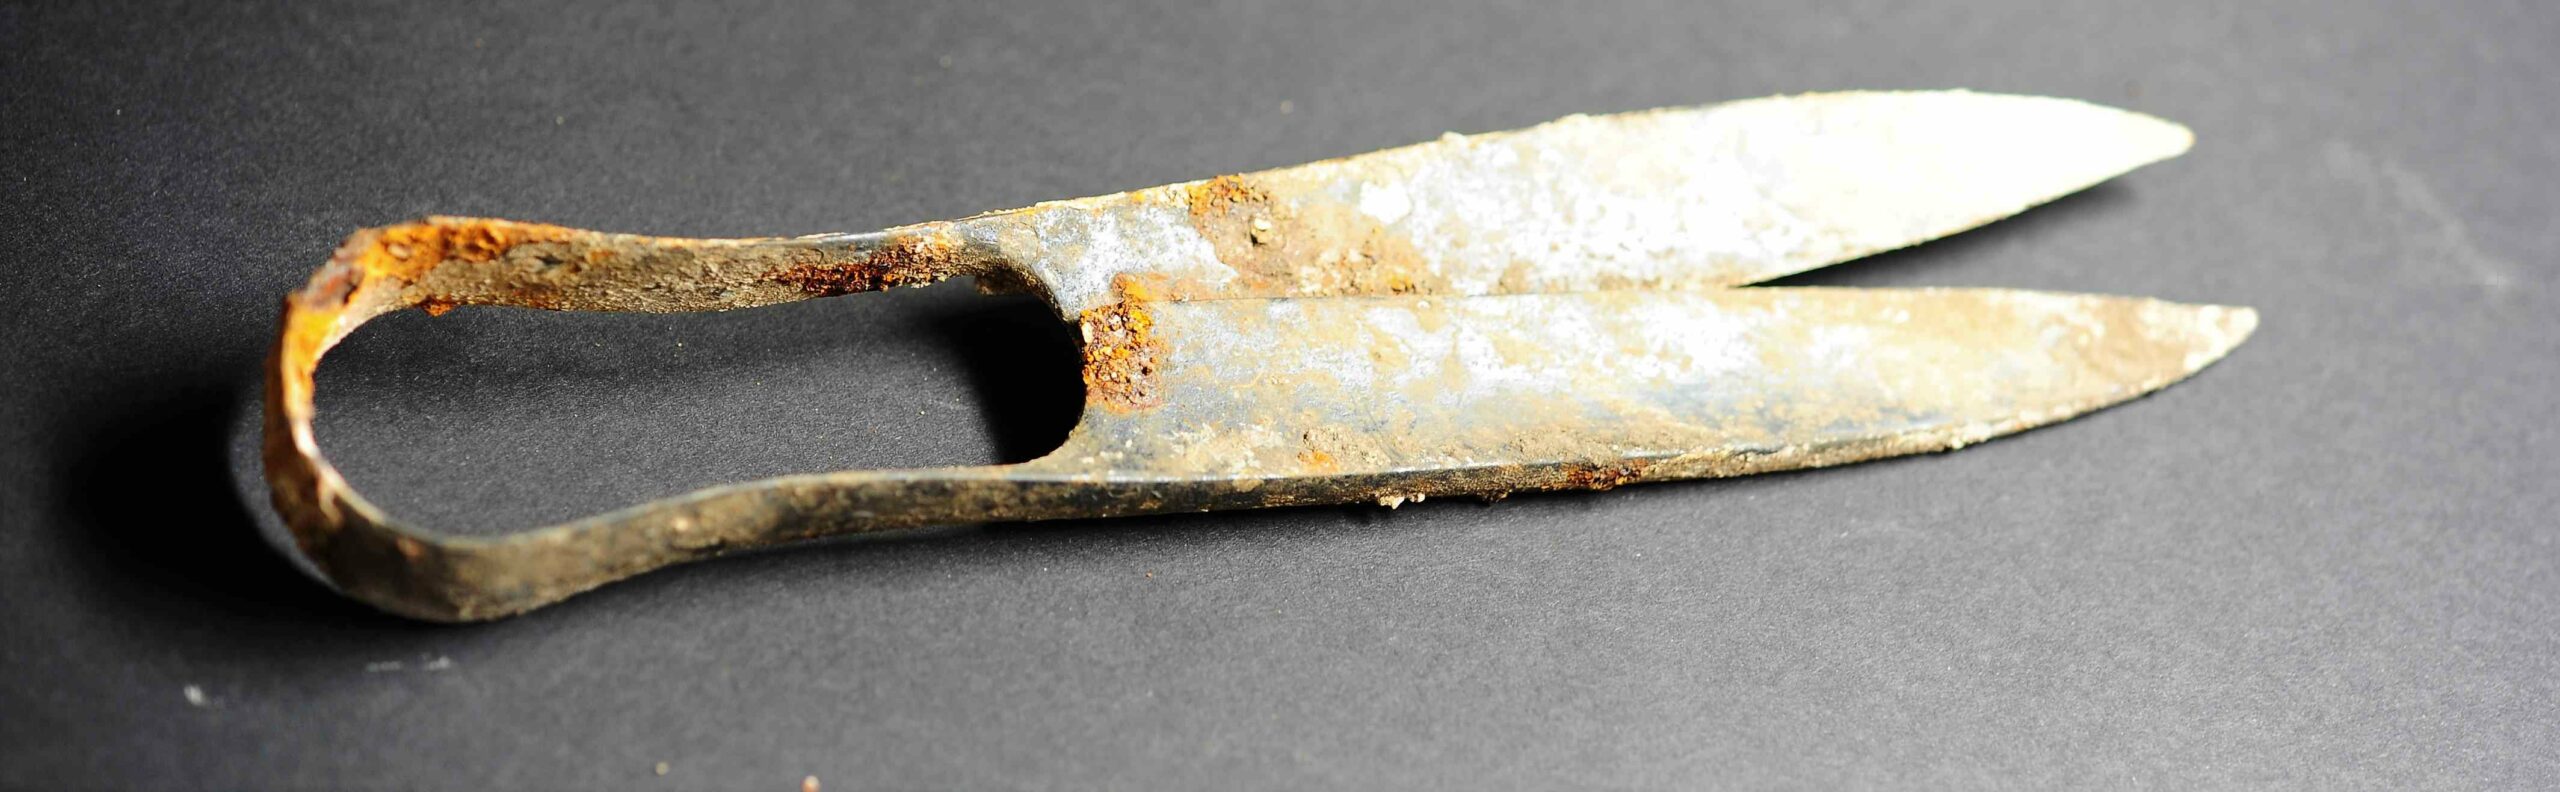 Tesouras de 2,300 anos e uma espada 'dobrada' descobertas em uma tumba de cremação celta na Alemanha 2